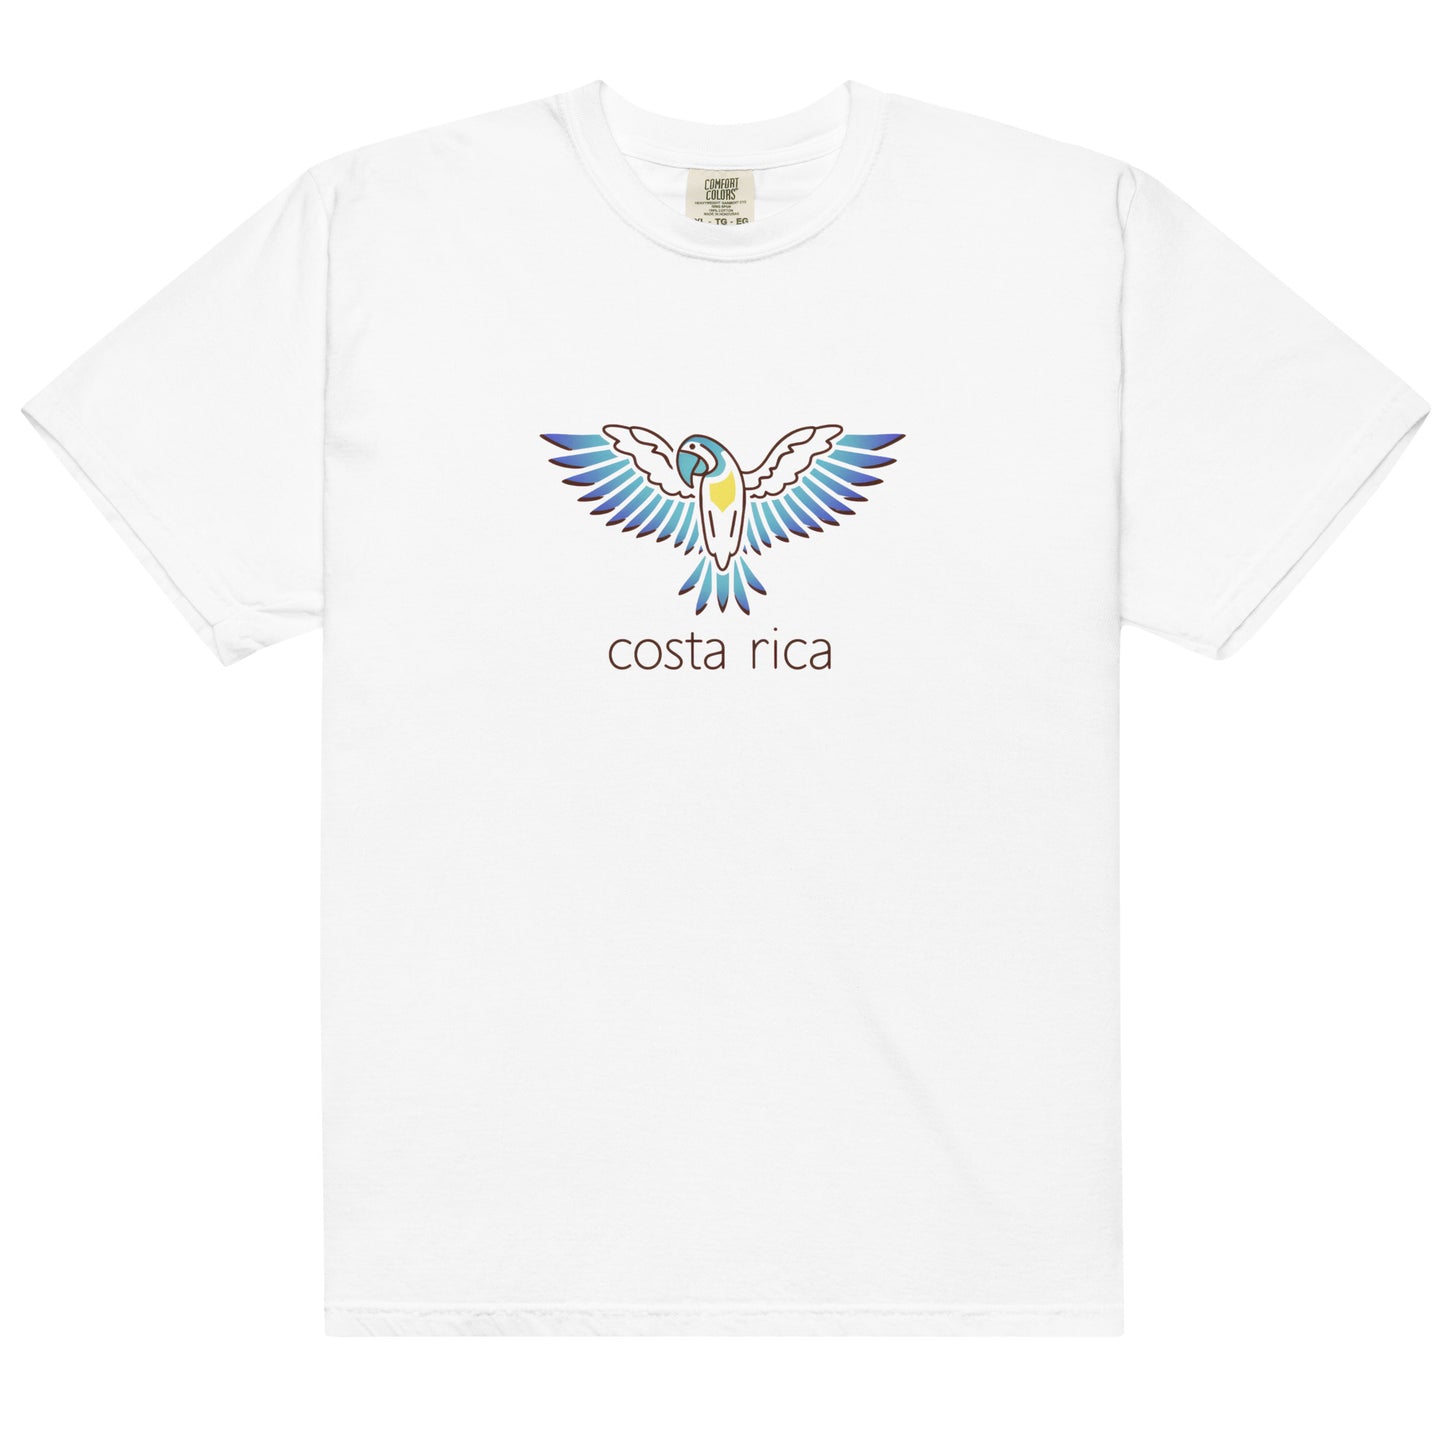 Elegant Costa Rica Parrot t-shirt - Unisex